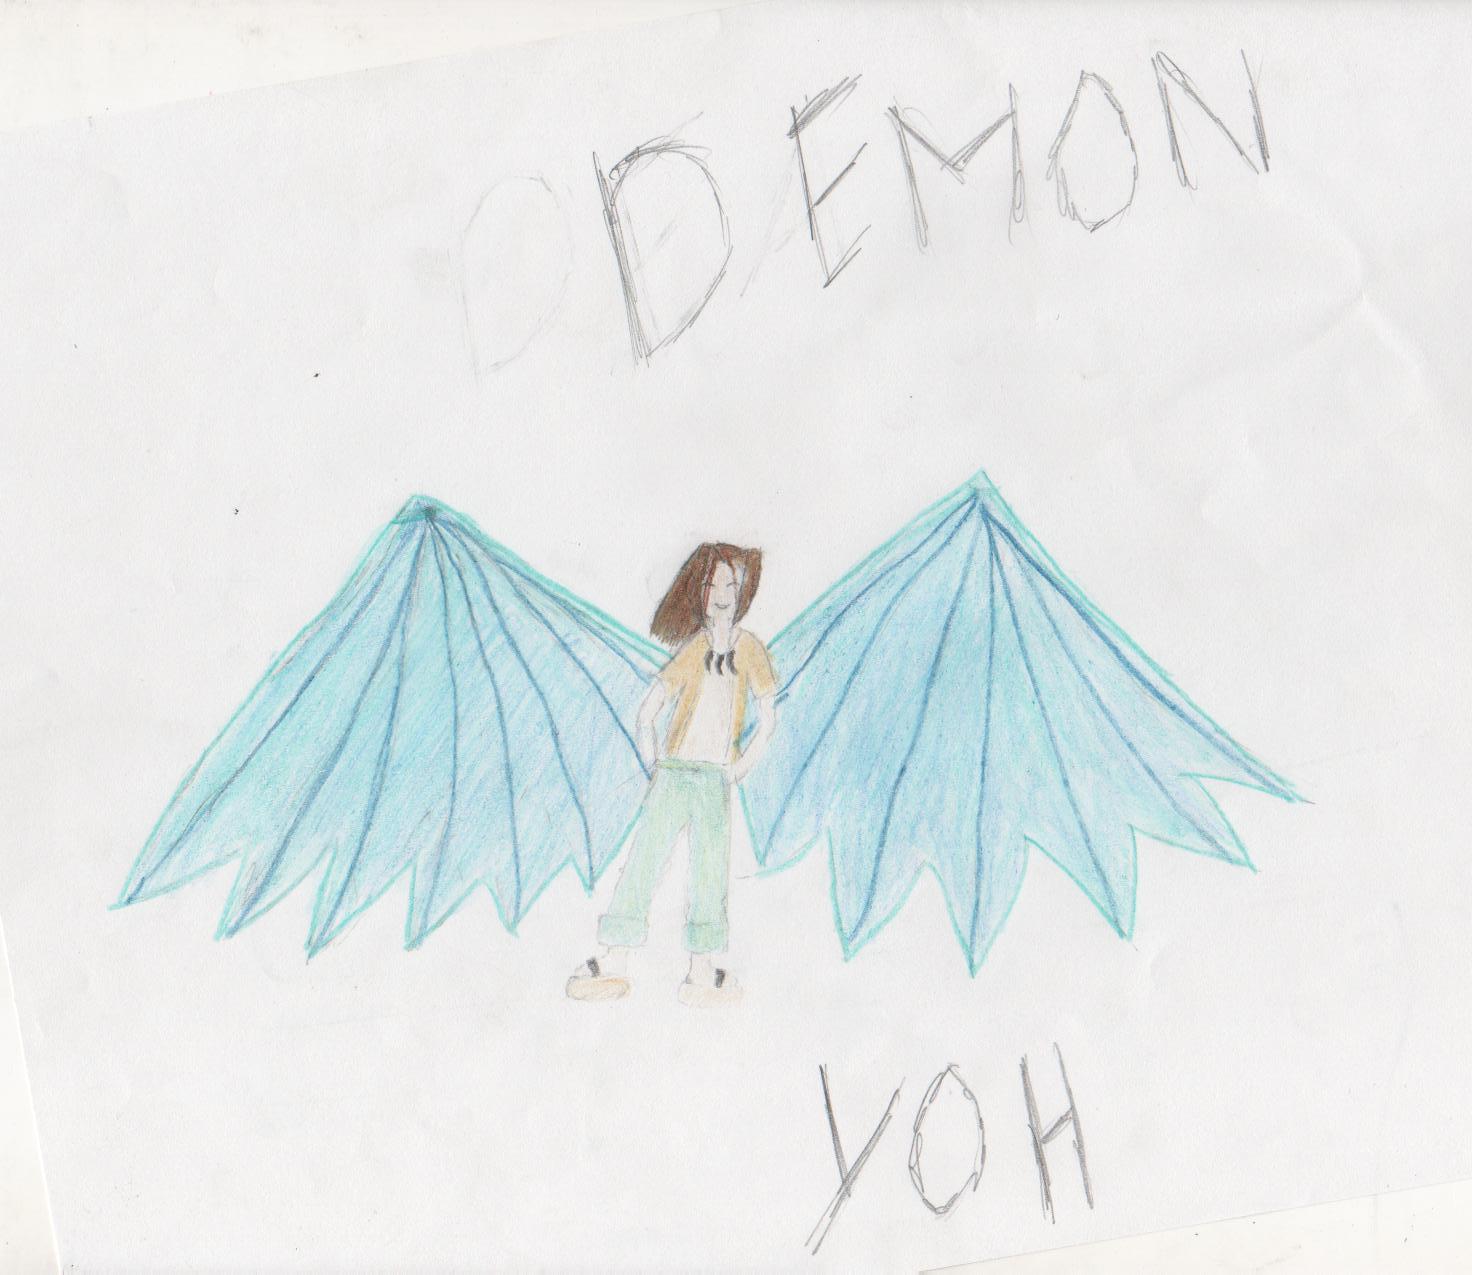 demon yoh by yohdo-chan